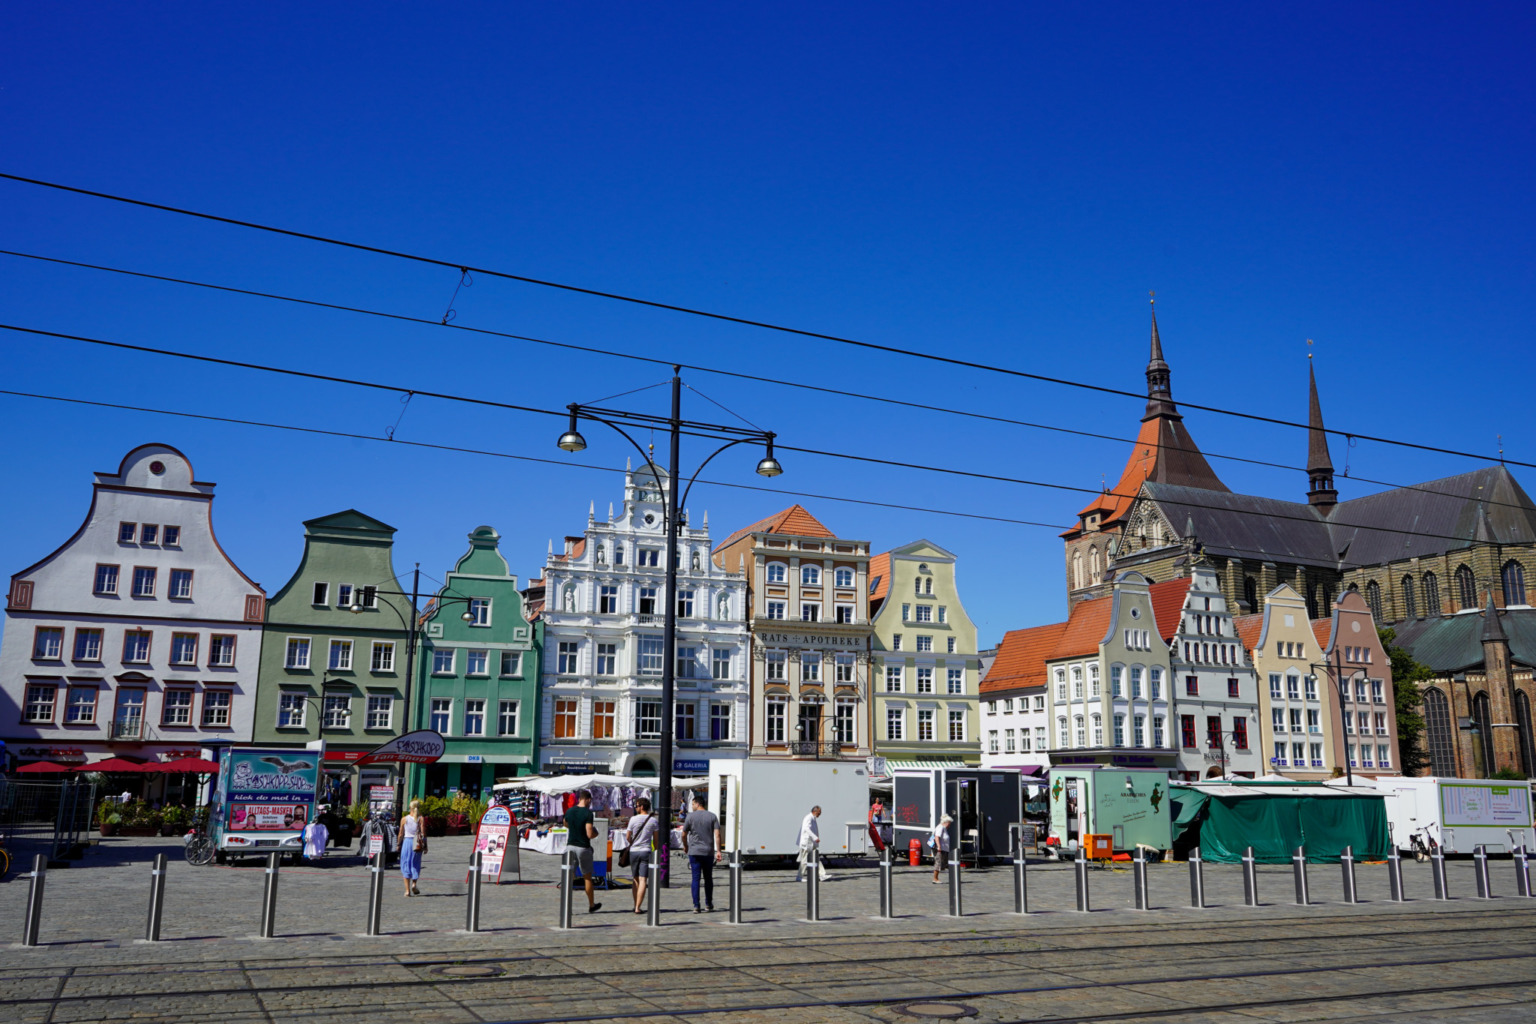 Wer Reiseziele in Ostdeutschland sucht, wird in Rostock fündig